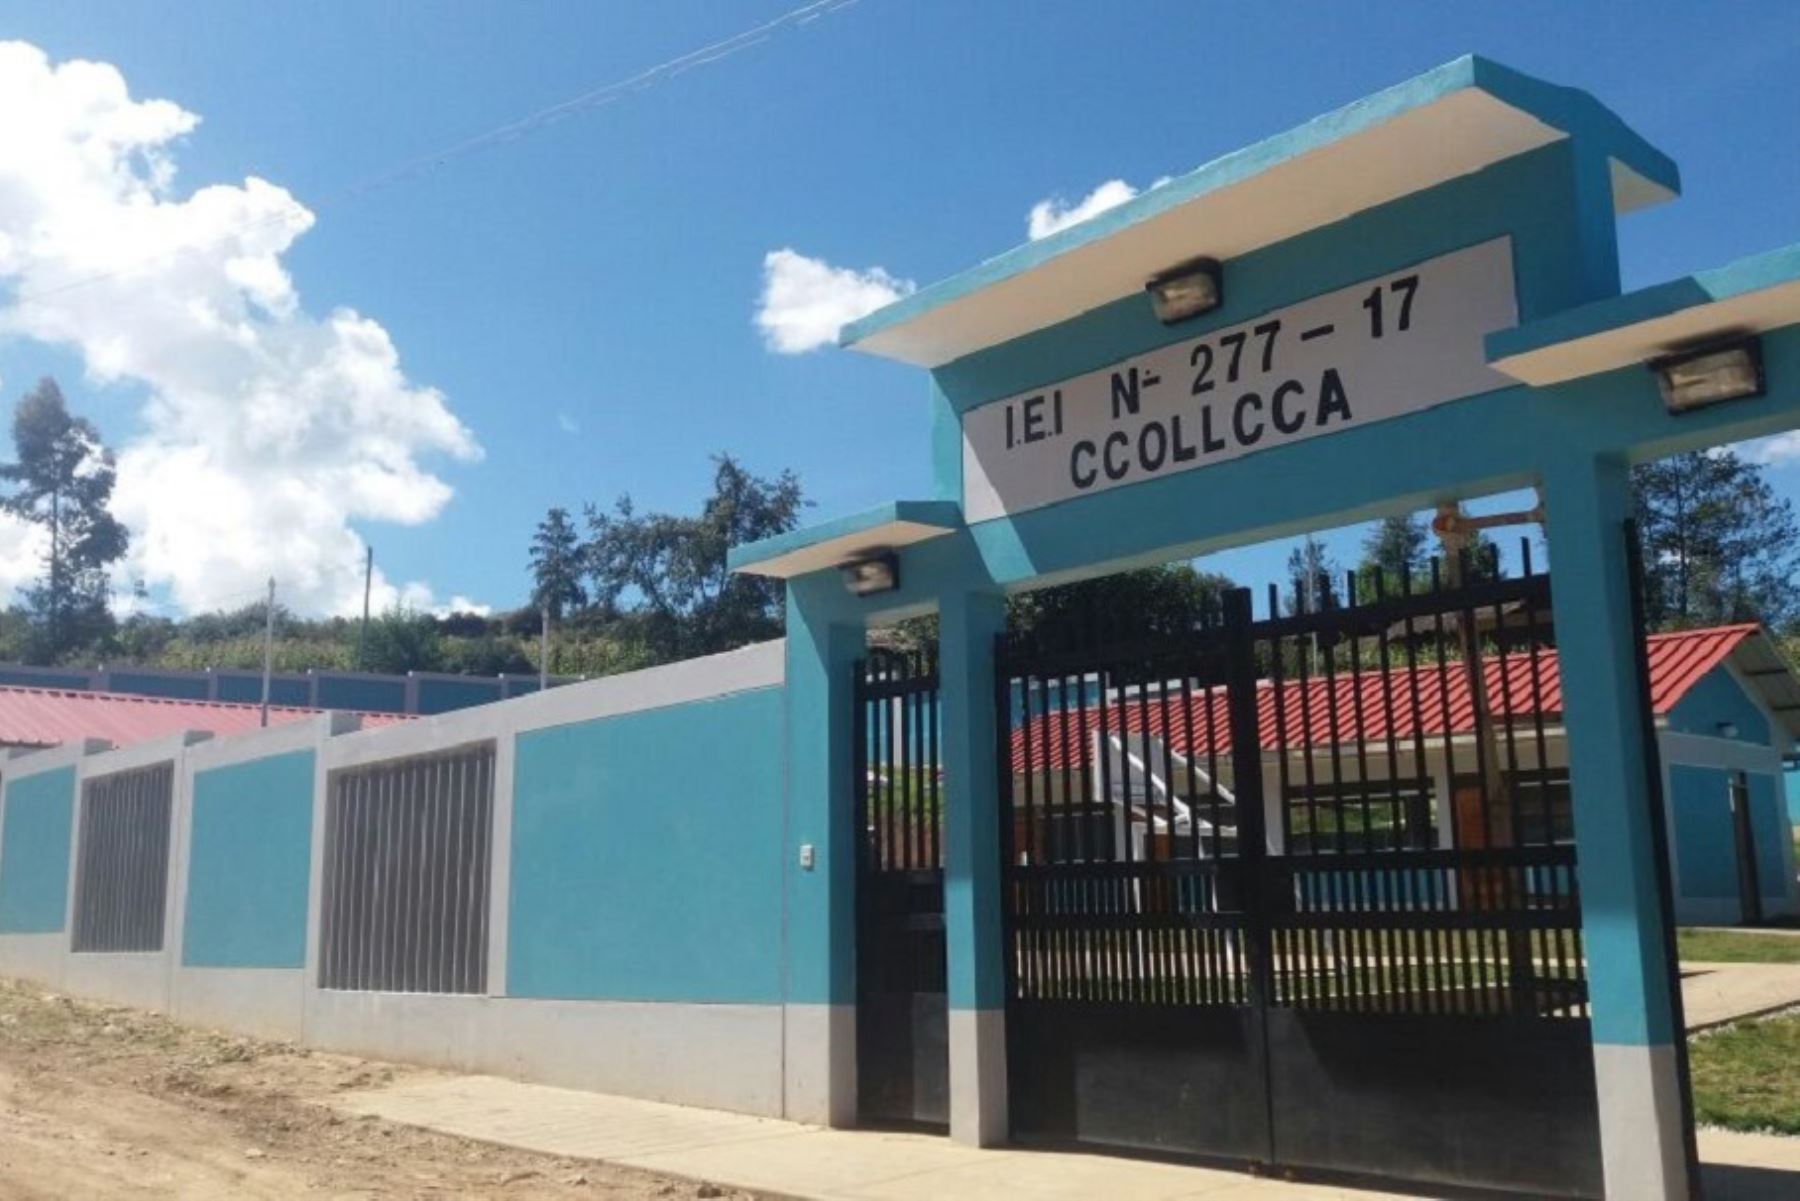 La IE Nº 277-17 Ccolca (Apurímac), que cuenta con 20 niños matriculados, tiene ahora dos aulas pedagógicas y una sala de usos múltiples.